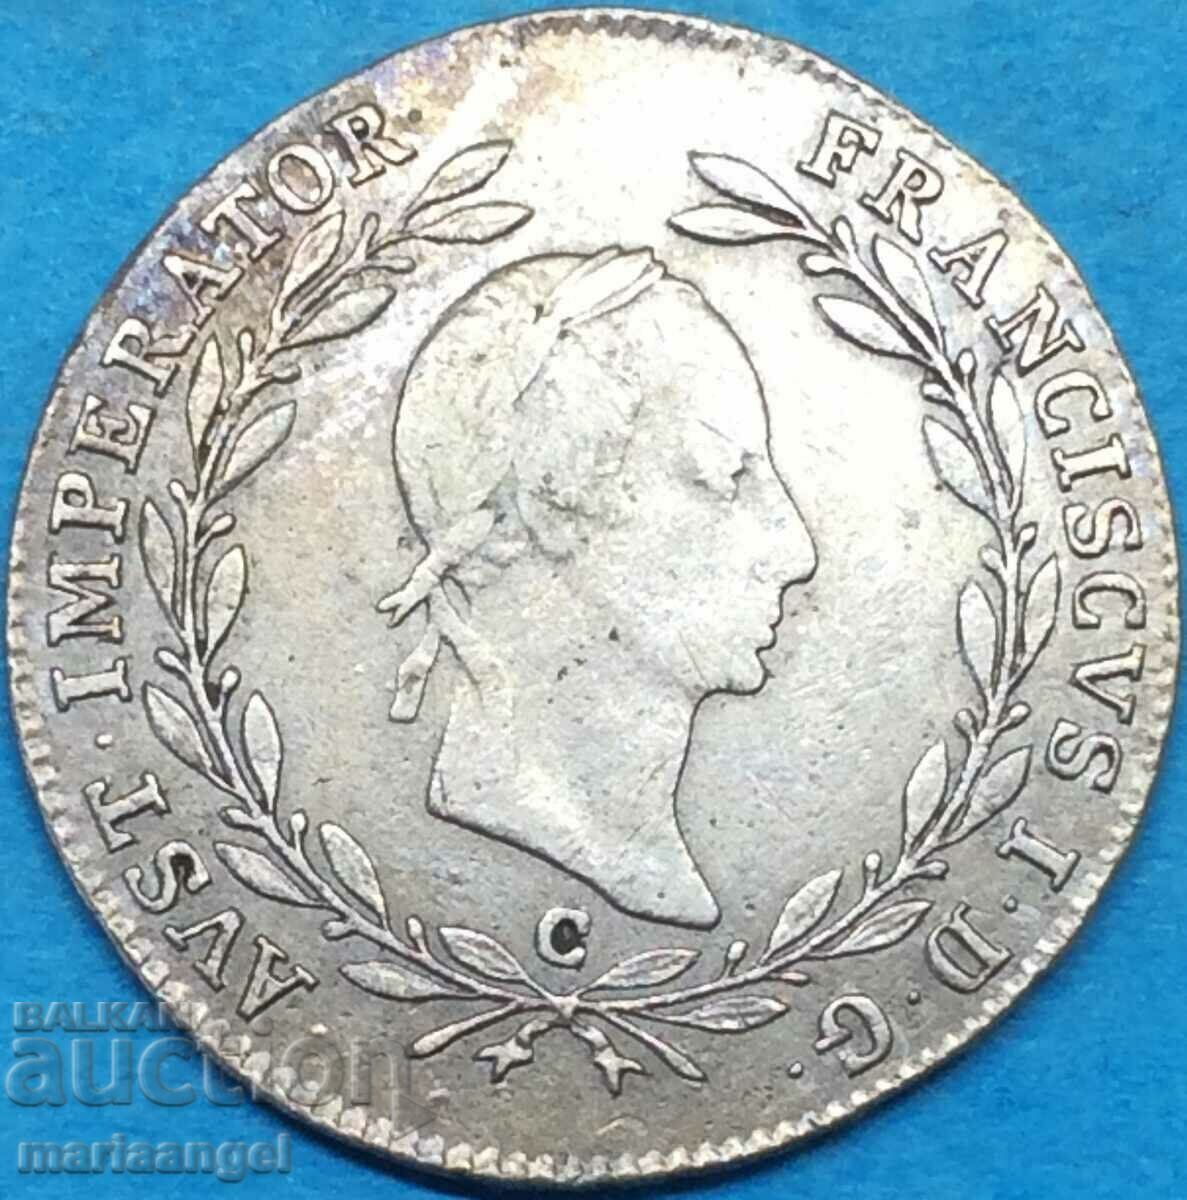 20 Kreuzer 1830 Austria C - argint Praga - rar